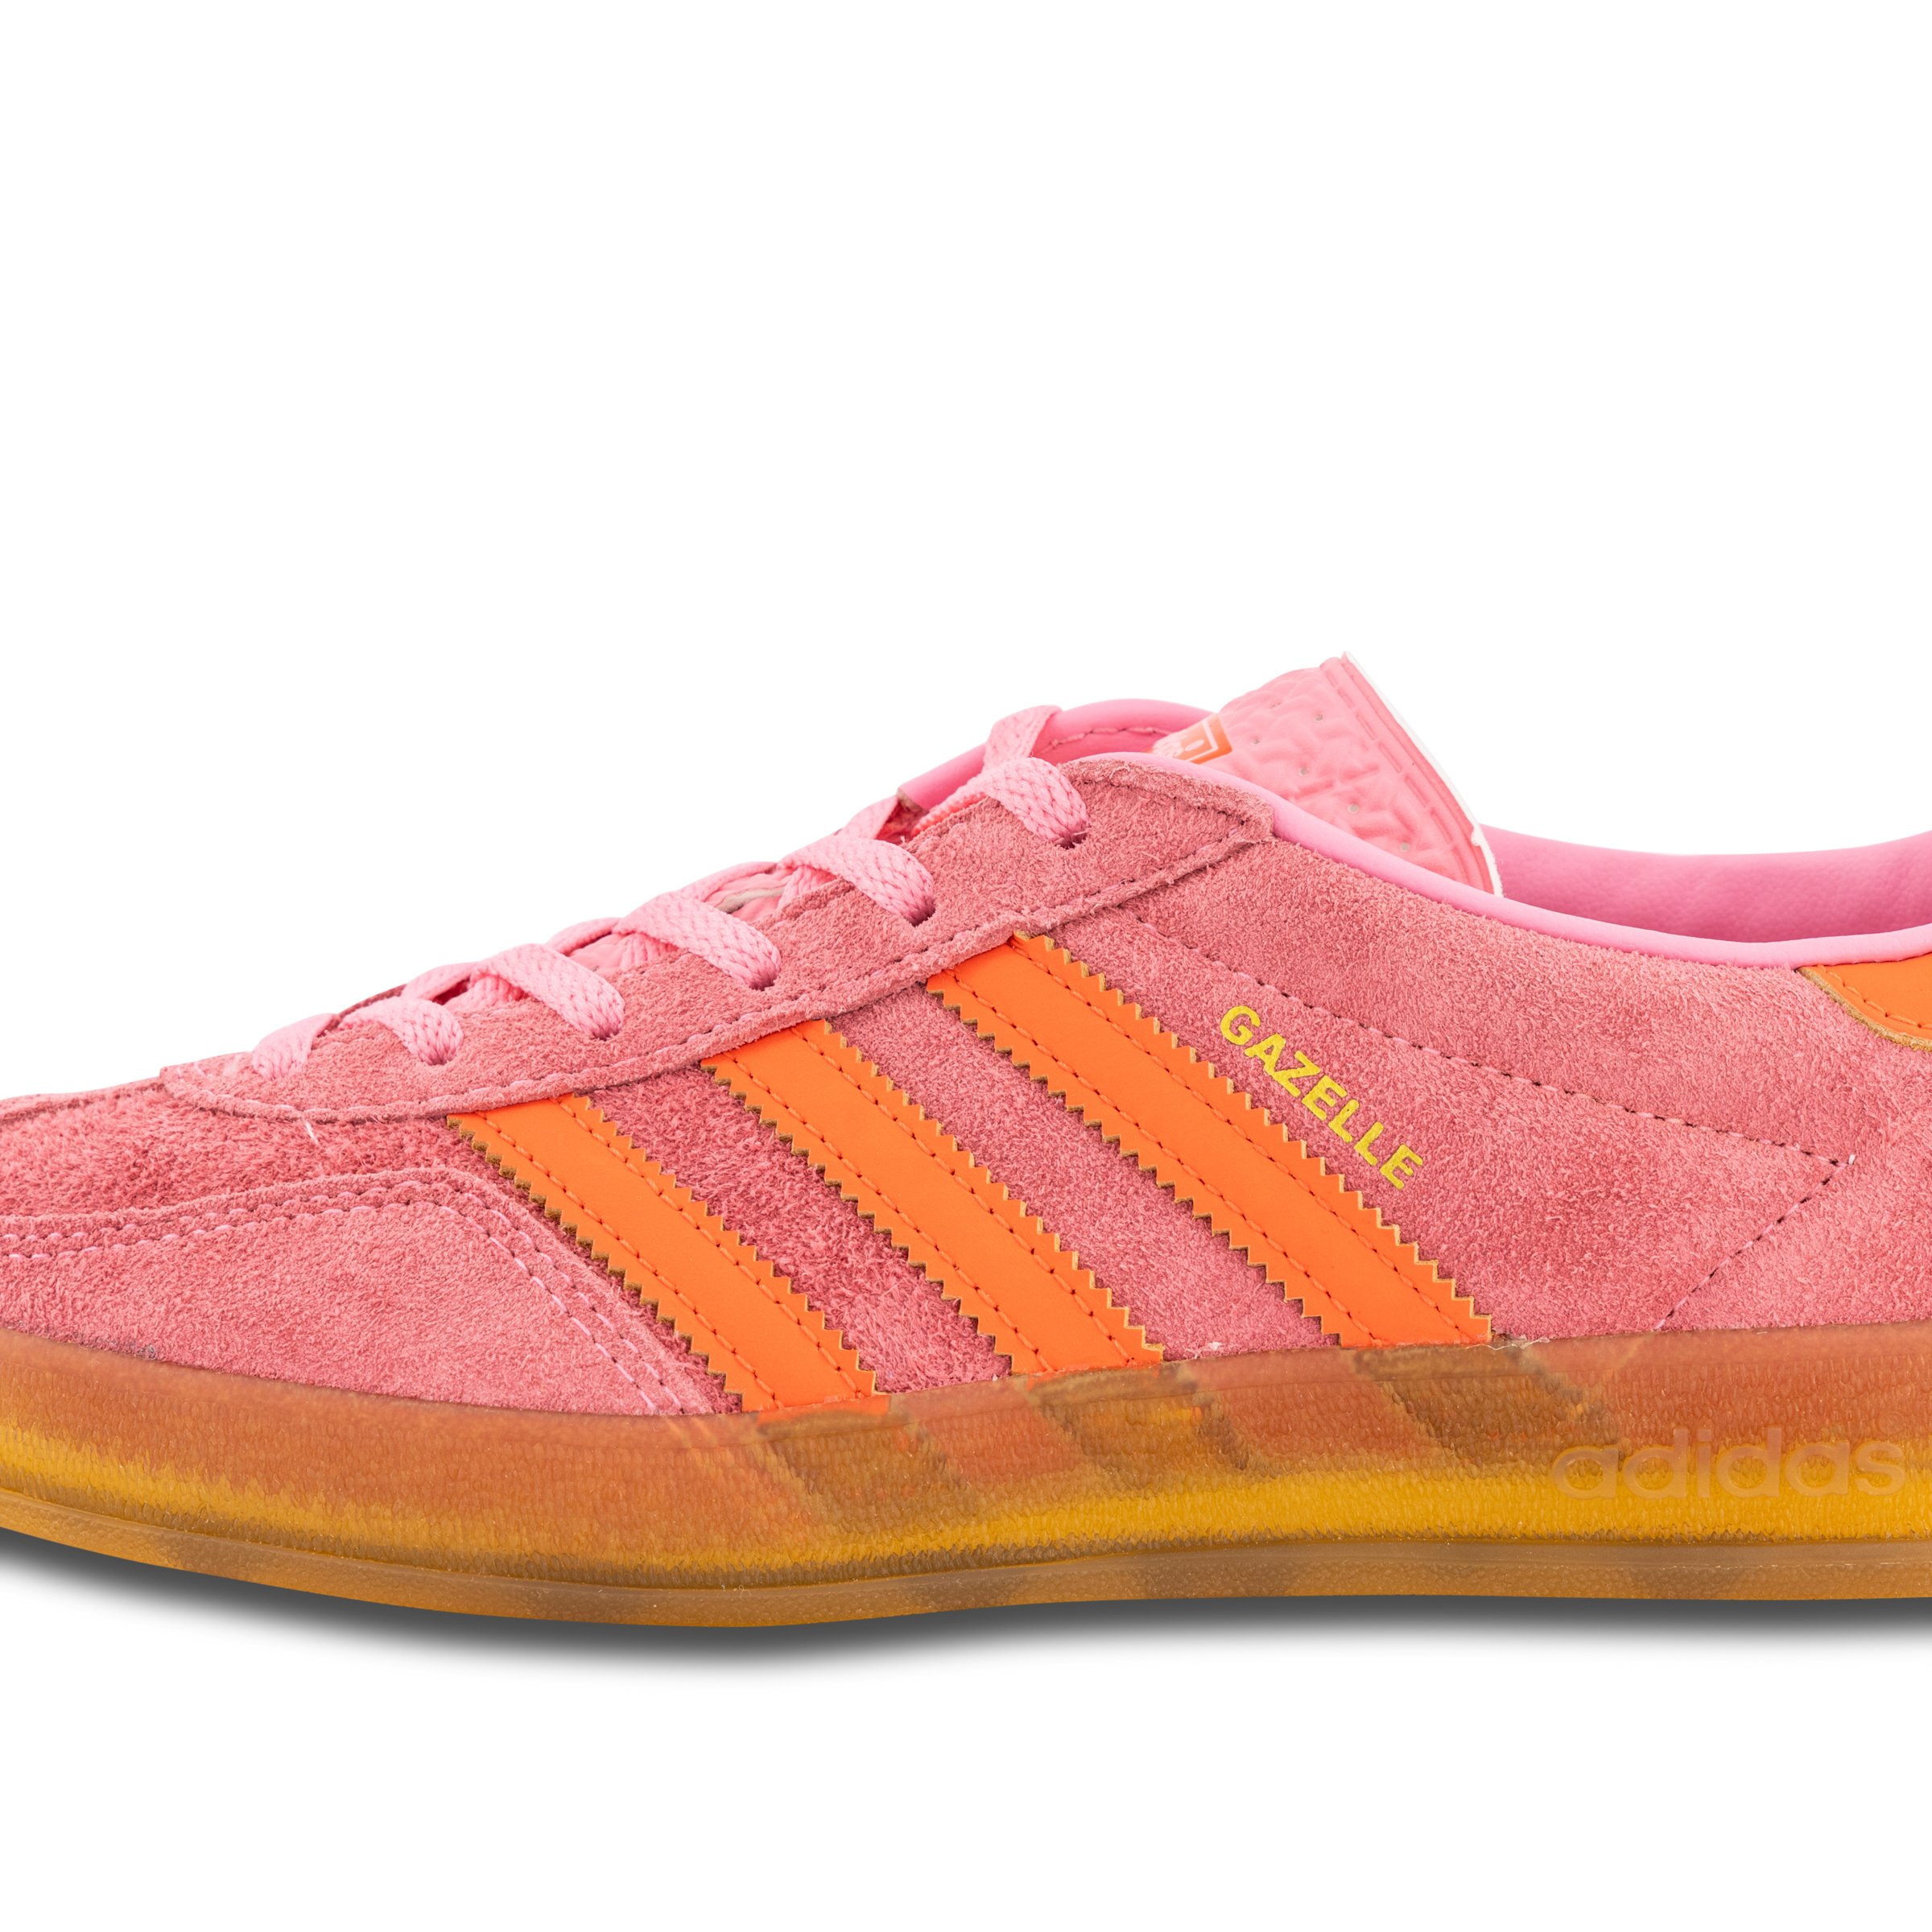 adidas Originals Gazelle Indoor gum sole sneakers in orange and pink